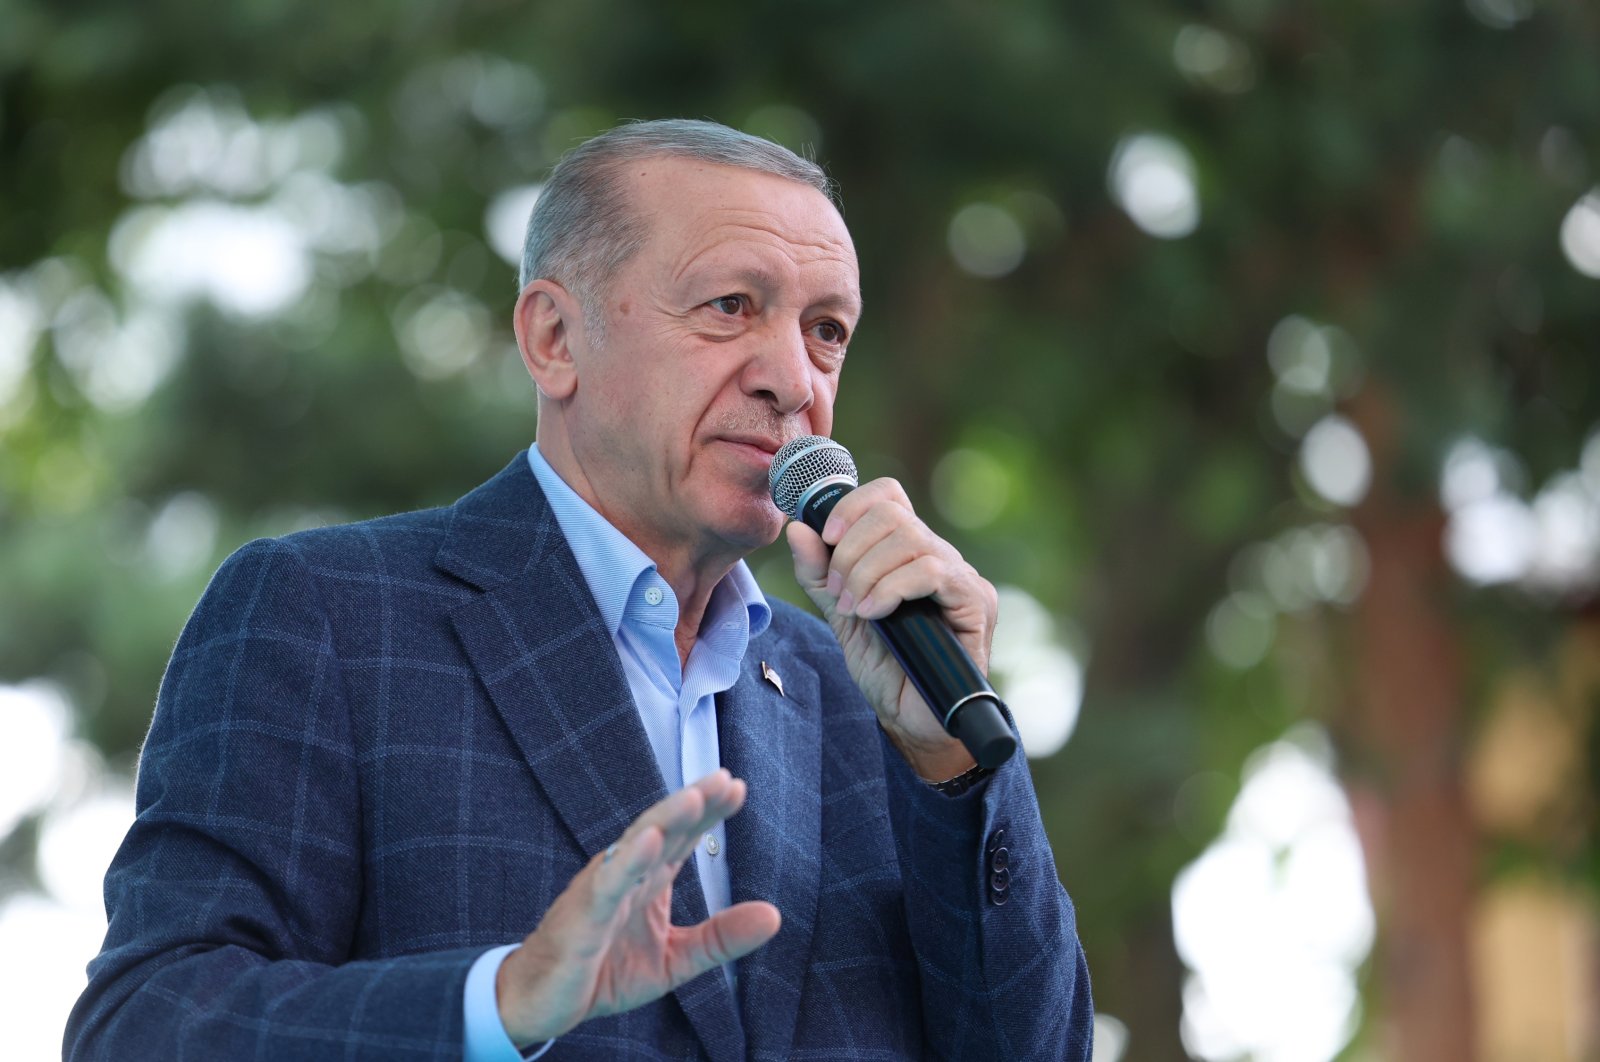  Эрдоган: Все наши конституции были написаны по указанию опекунов и навязаны народу 